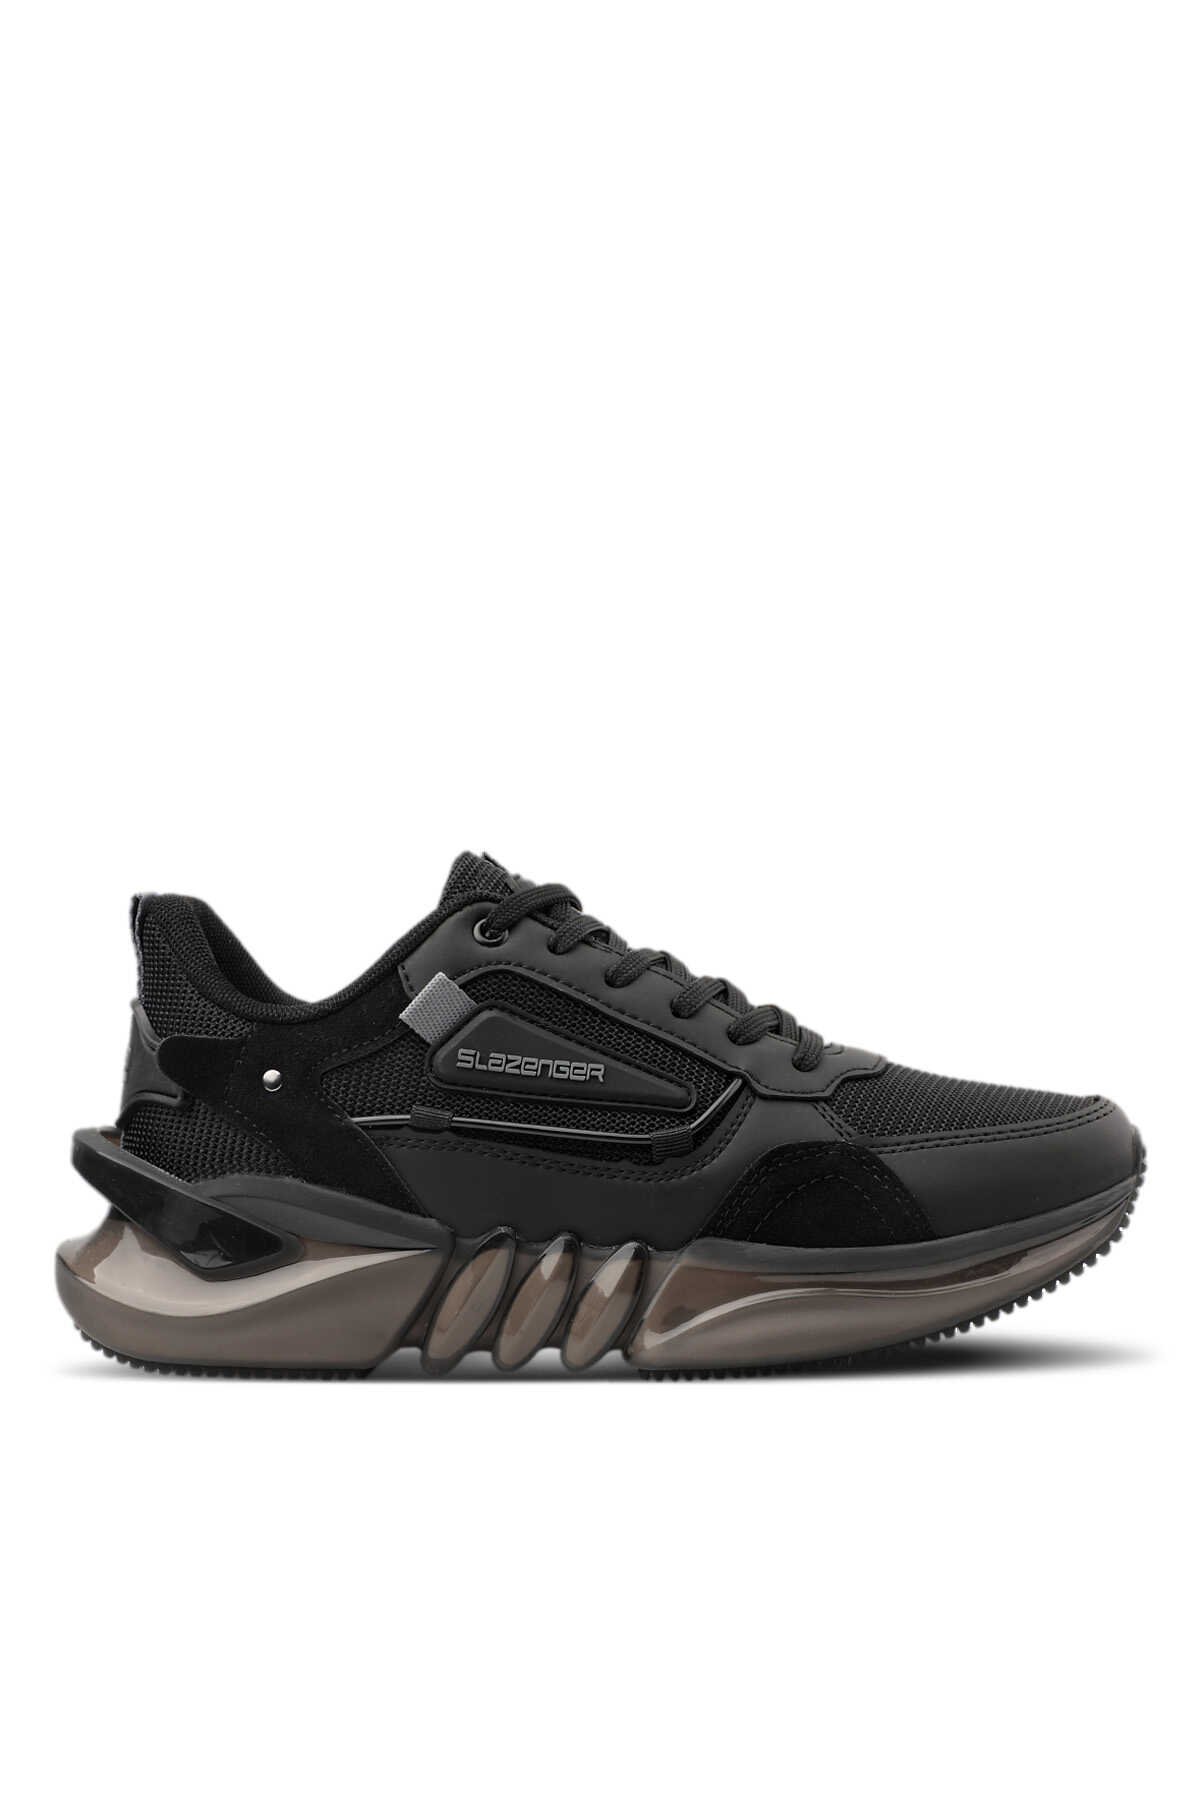 Slazenger - Slazenger ZENON Sneaker Erkek Ayakkabı Siyah / Siyah